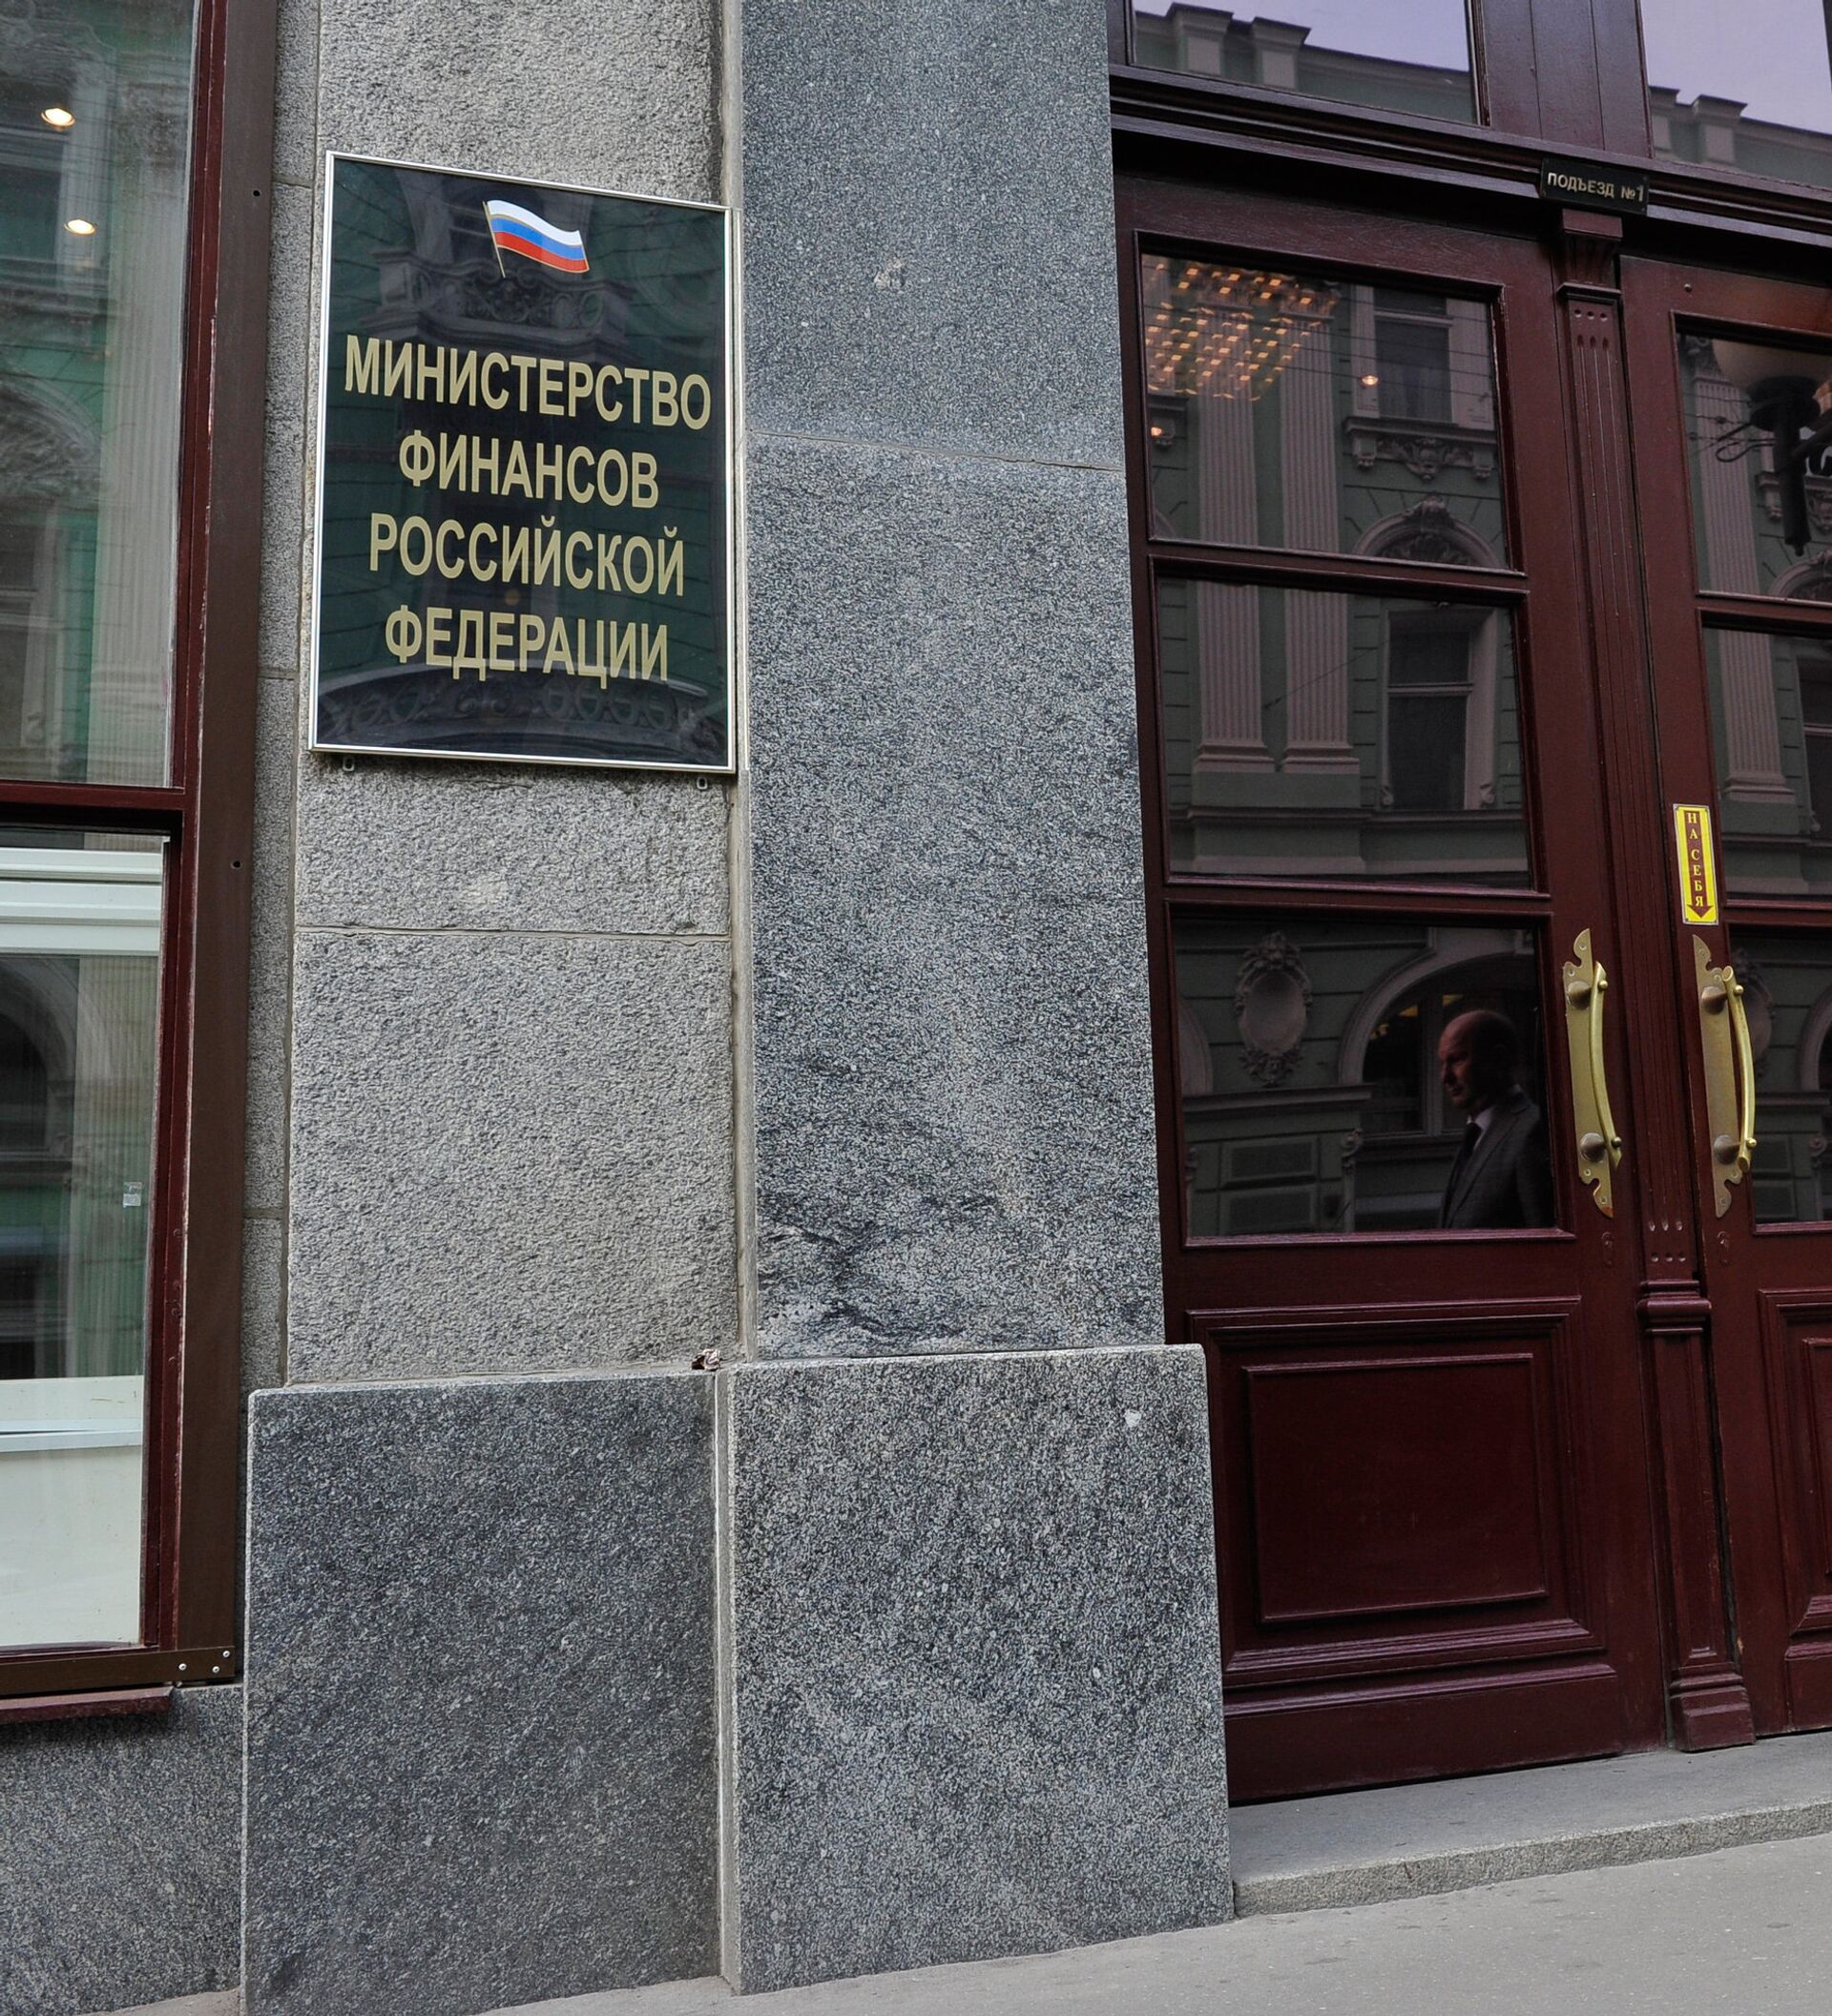 Минфин России здание. Министерство финансов здание. Минфин России фото. Министерство финансов Москва.